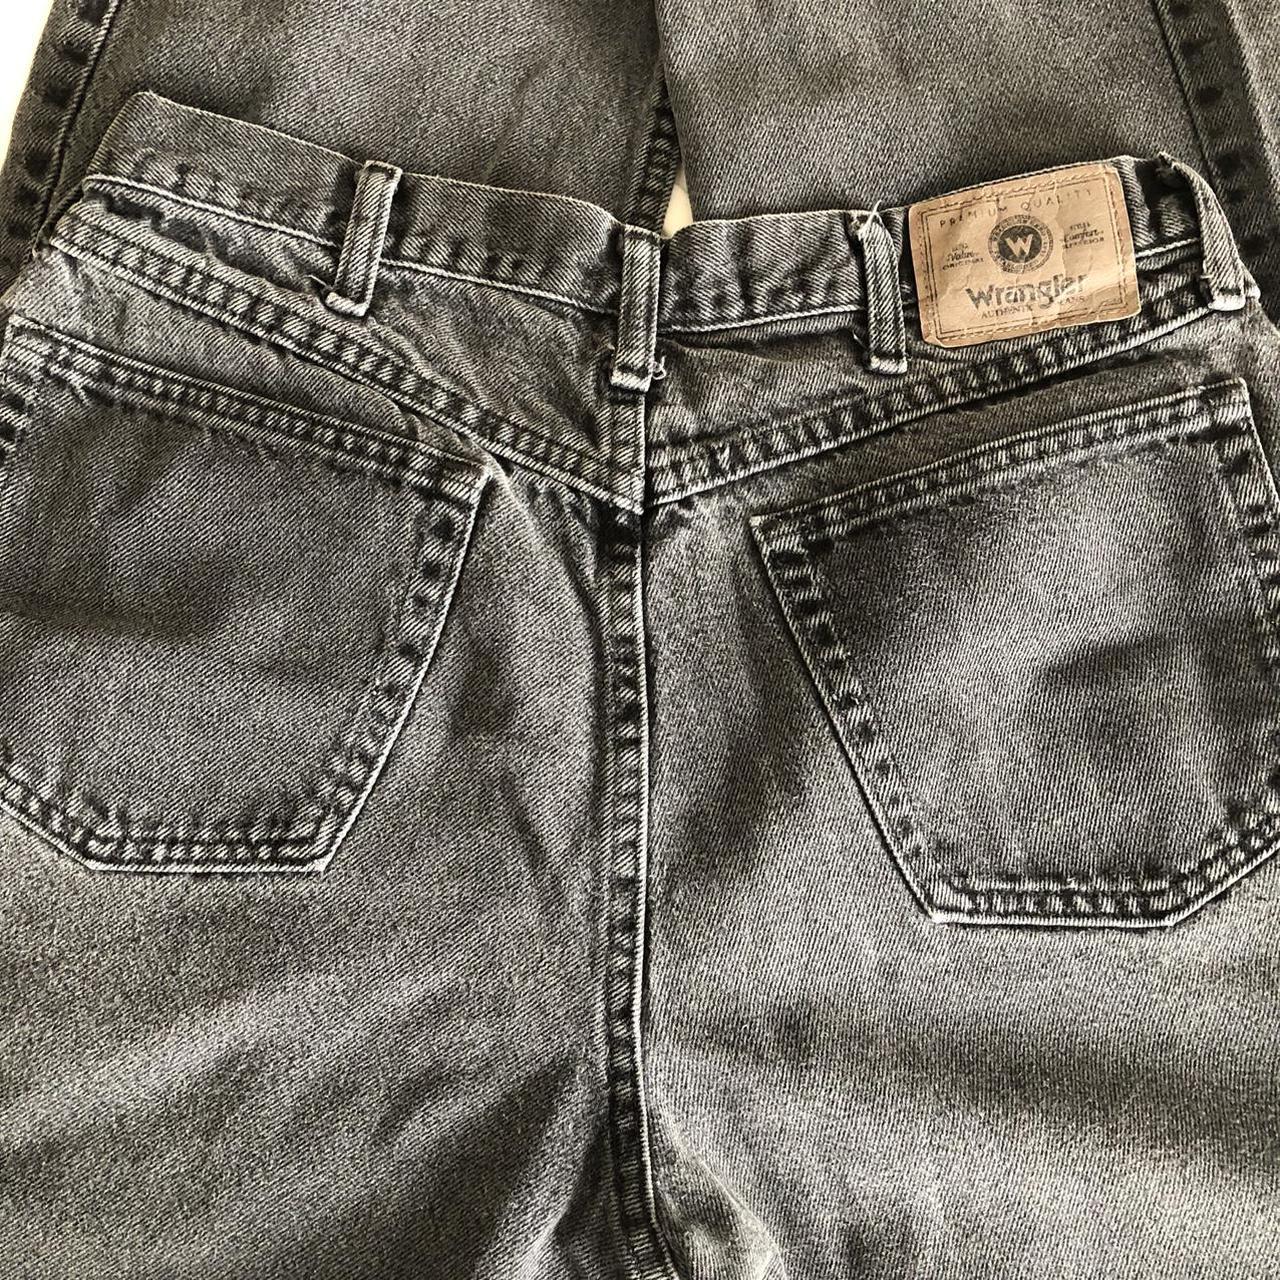 Vintage black wash denim Wrangler jeans. It’s 100%... - Depop